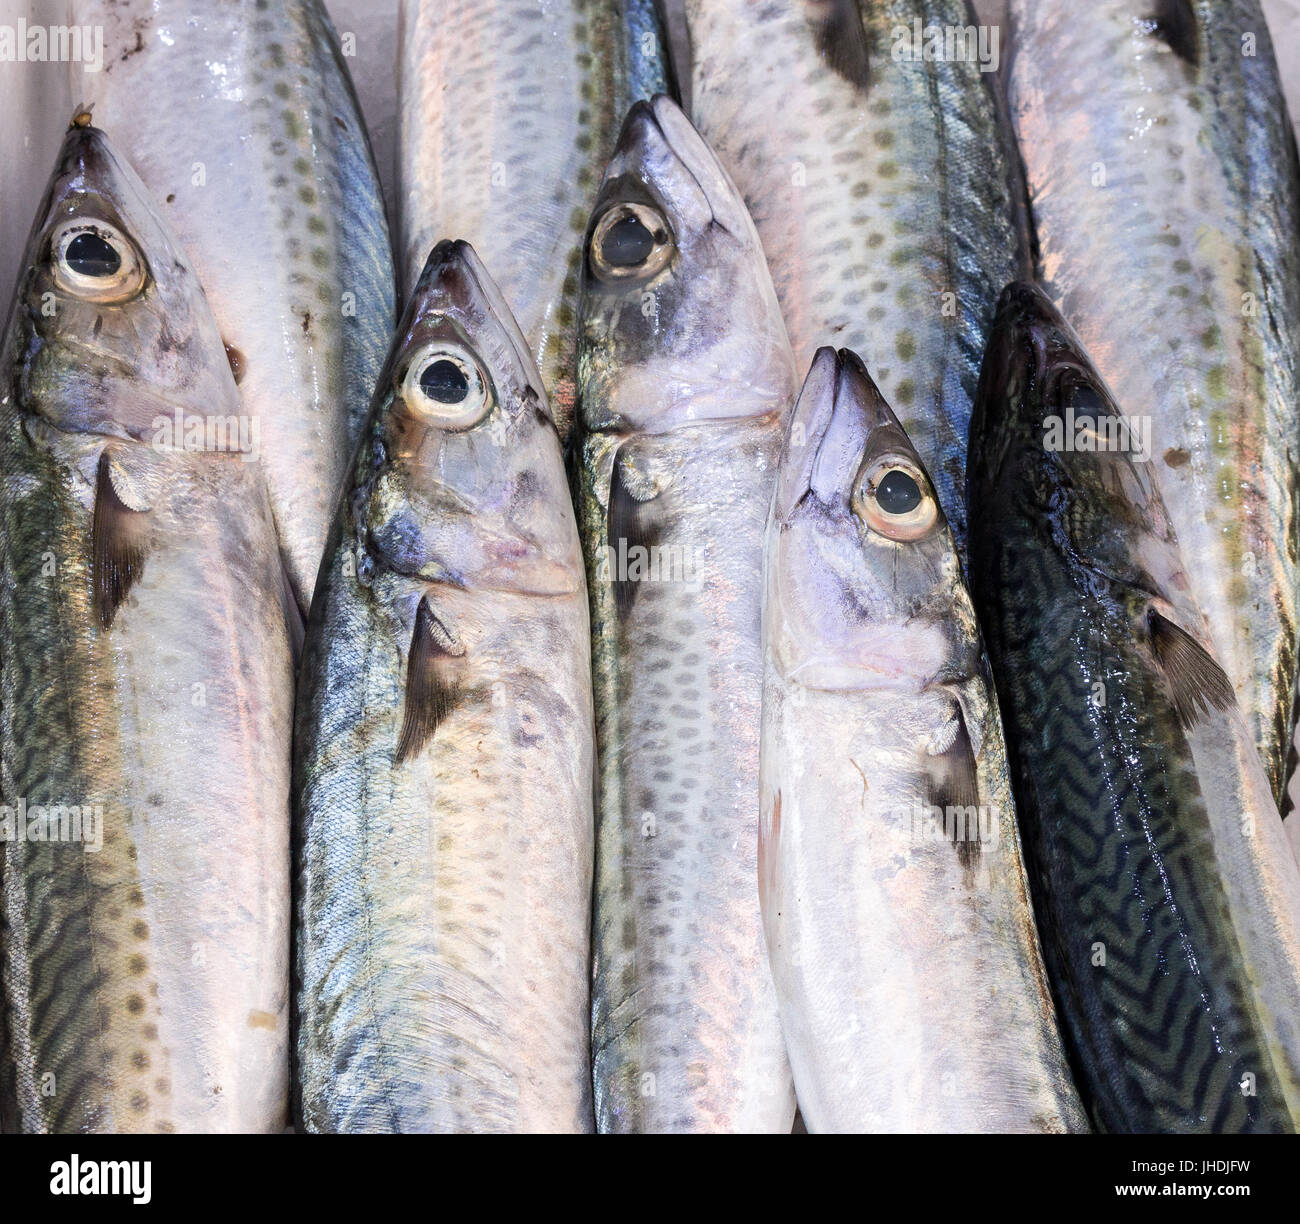 frischer Fang Mackerlel Fisch auf mediterranen Markt Stockfoto